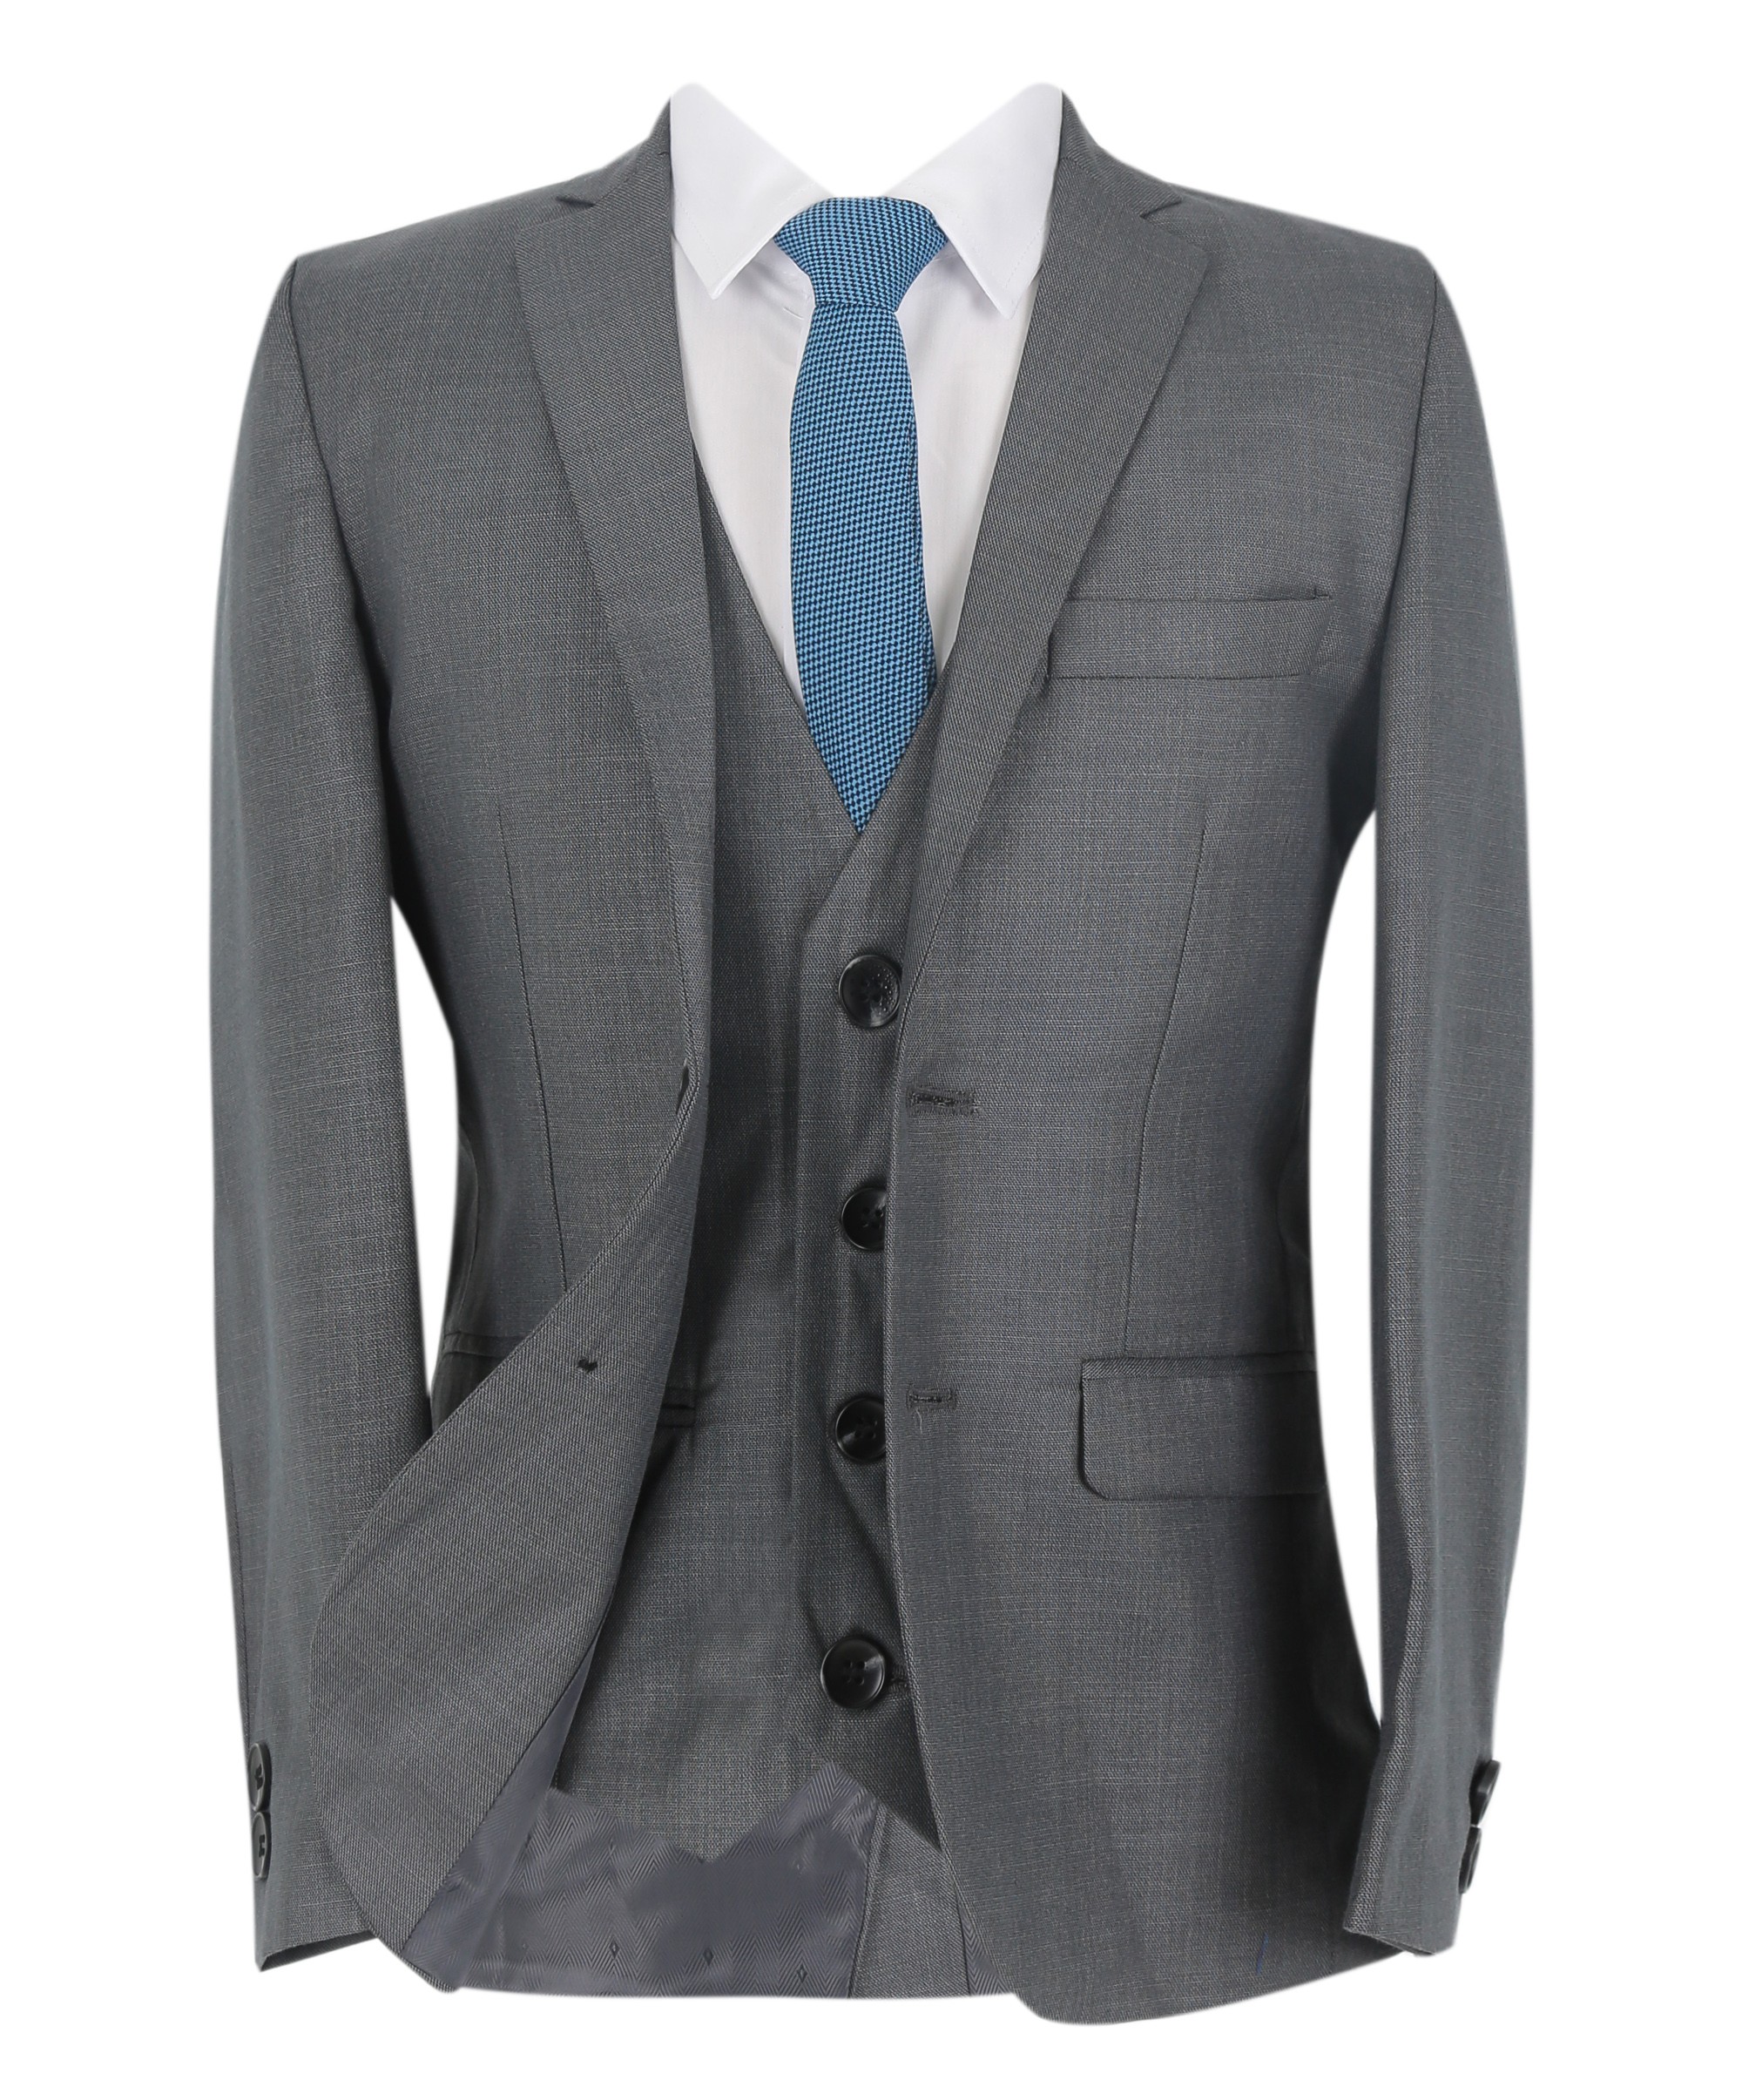 Boys Formal Suit Set - Grey